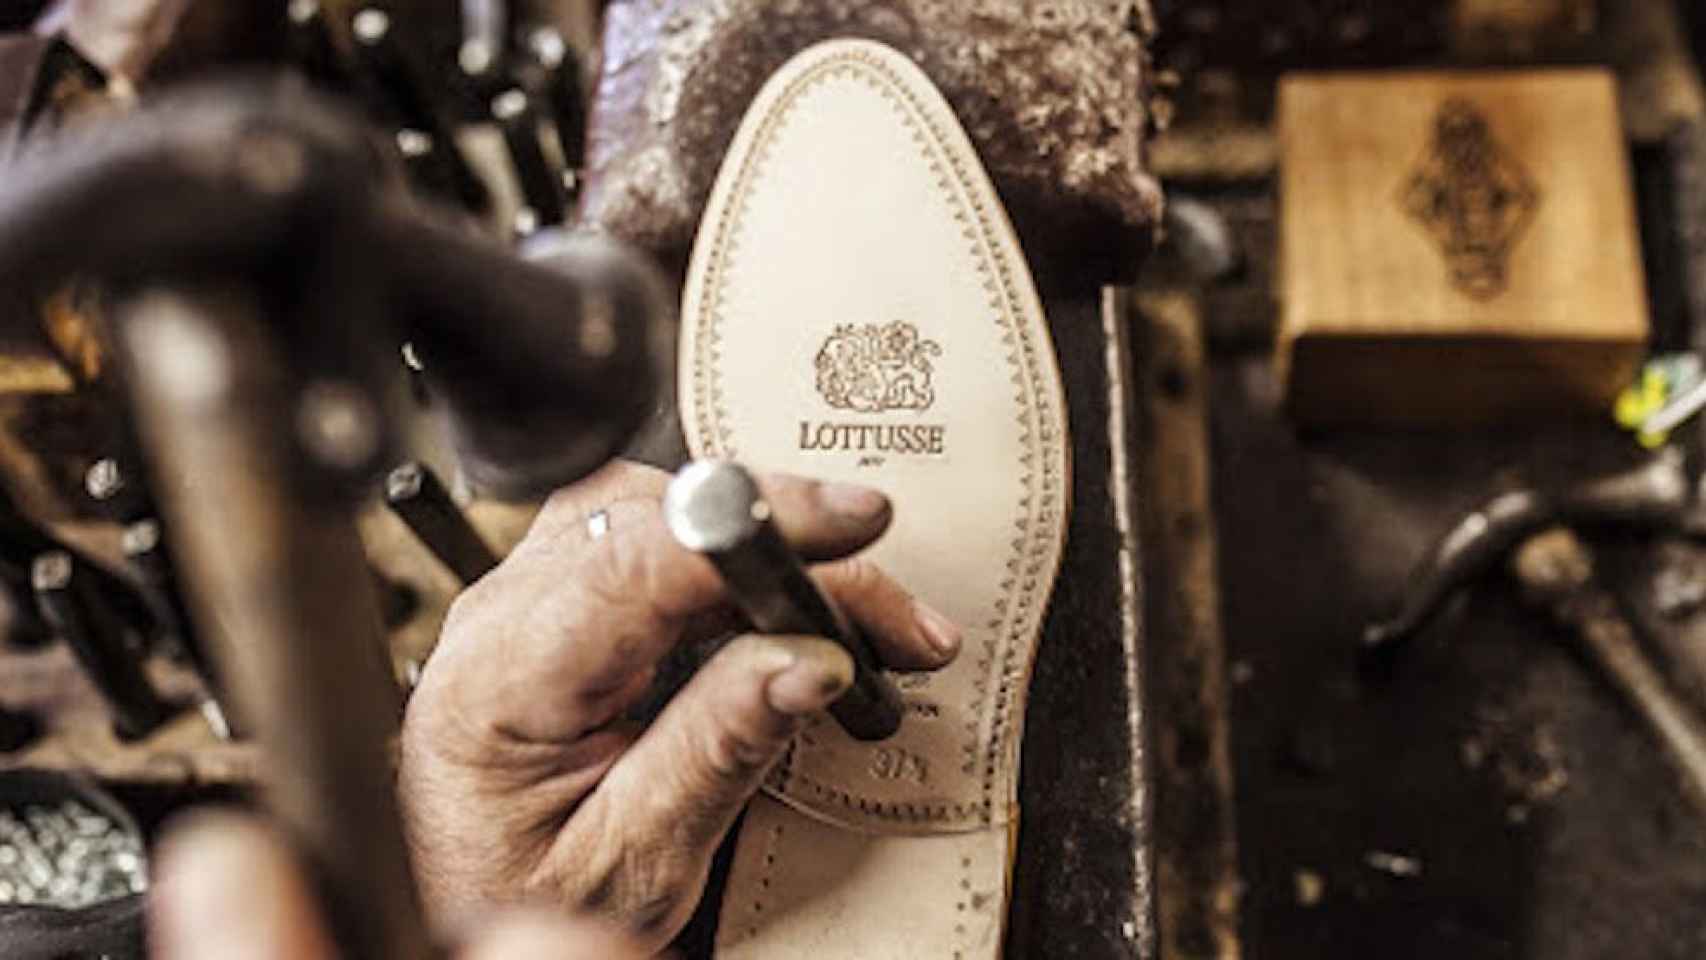 Suela de zapato de la firma mallorquina Lottusse